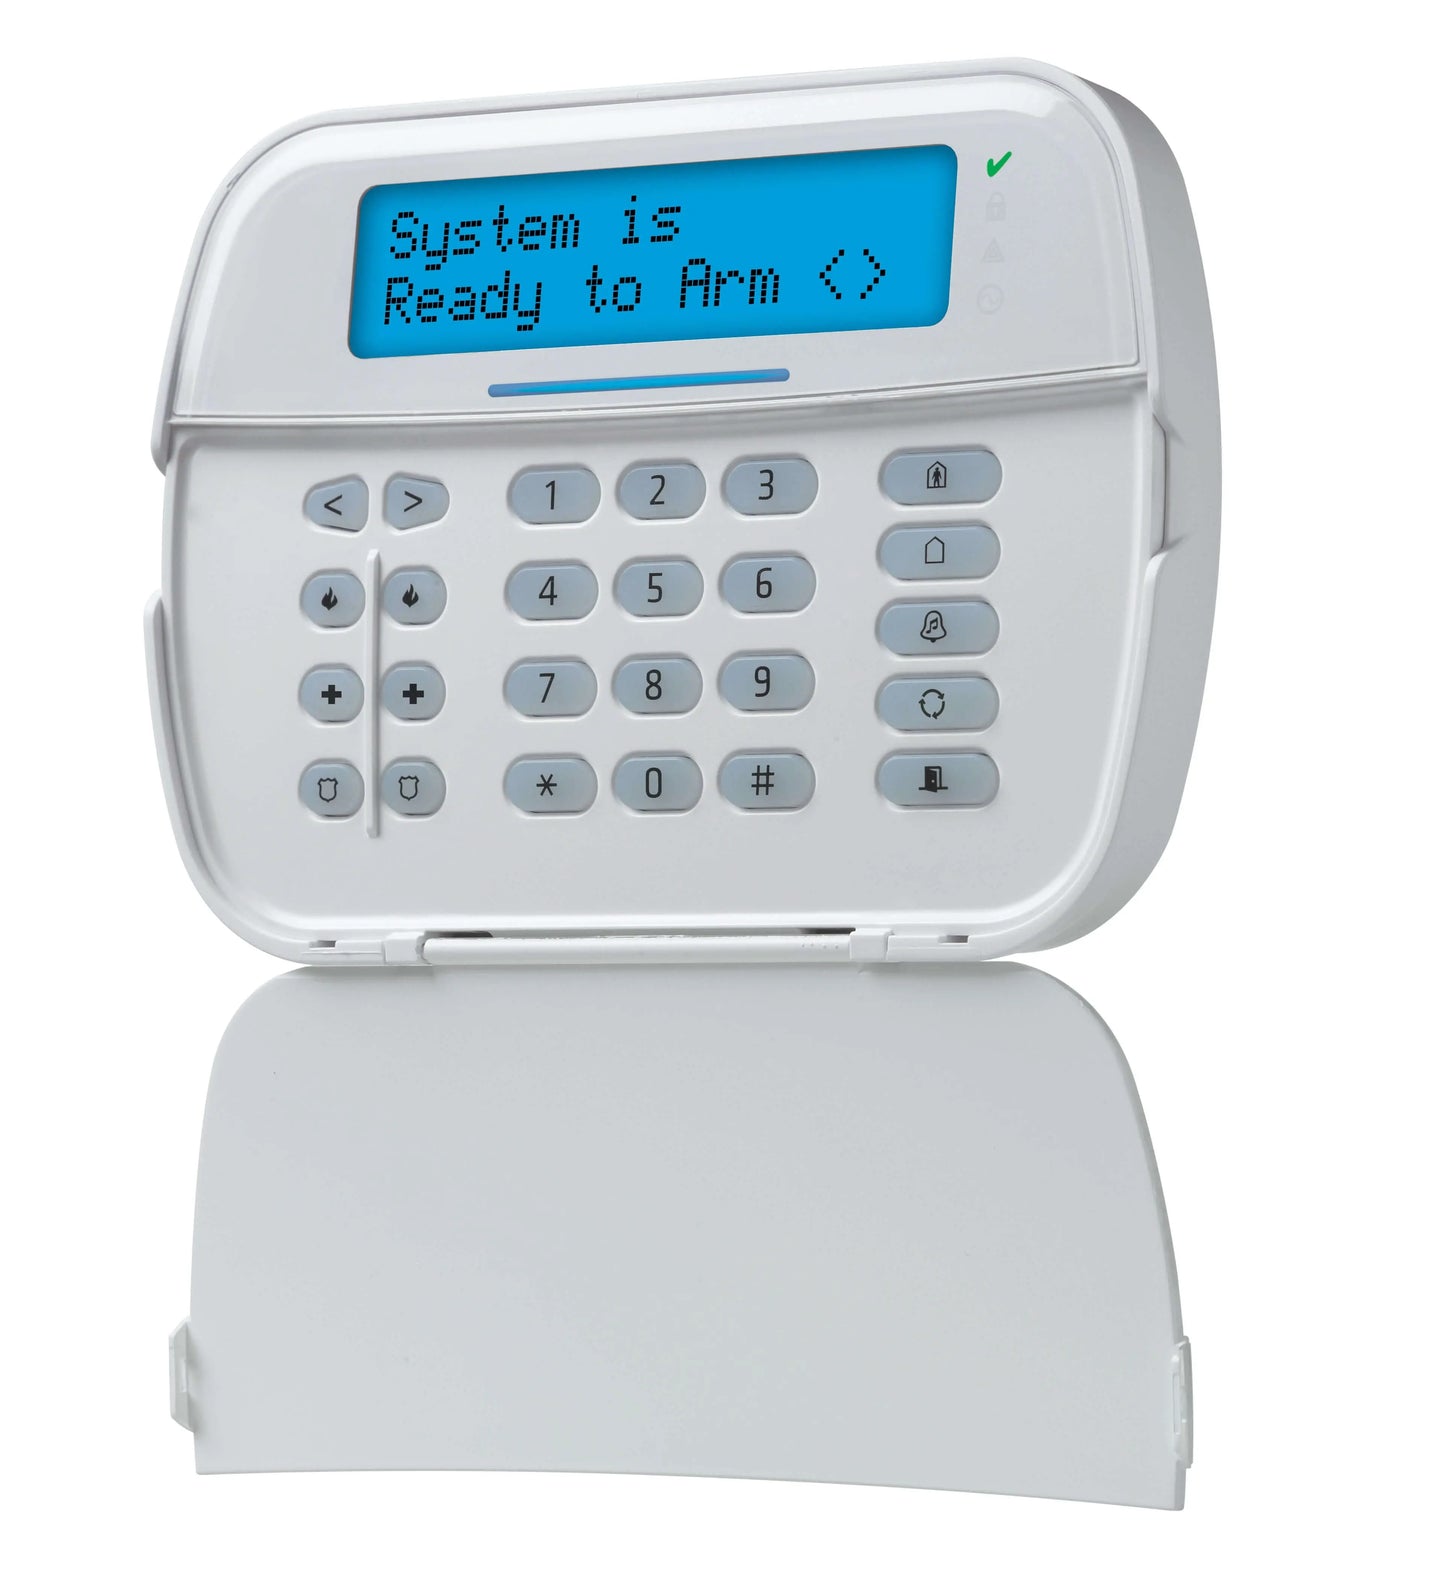 alarm system full message keypad